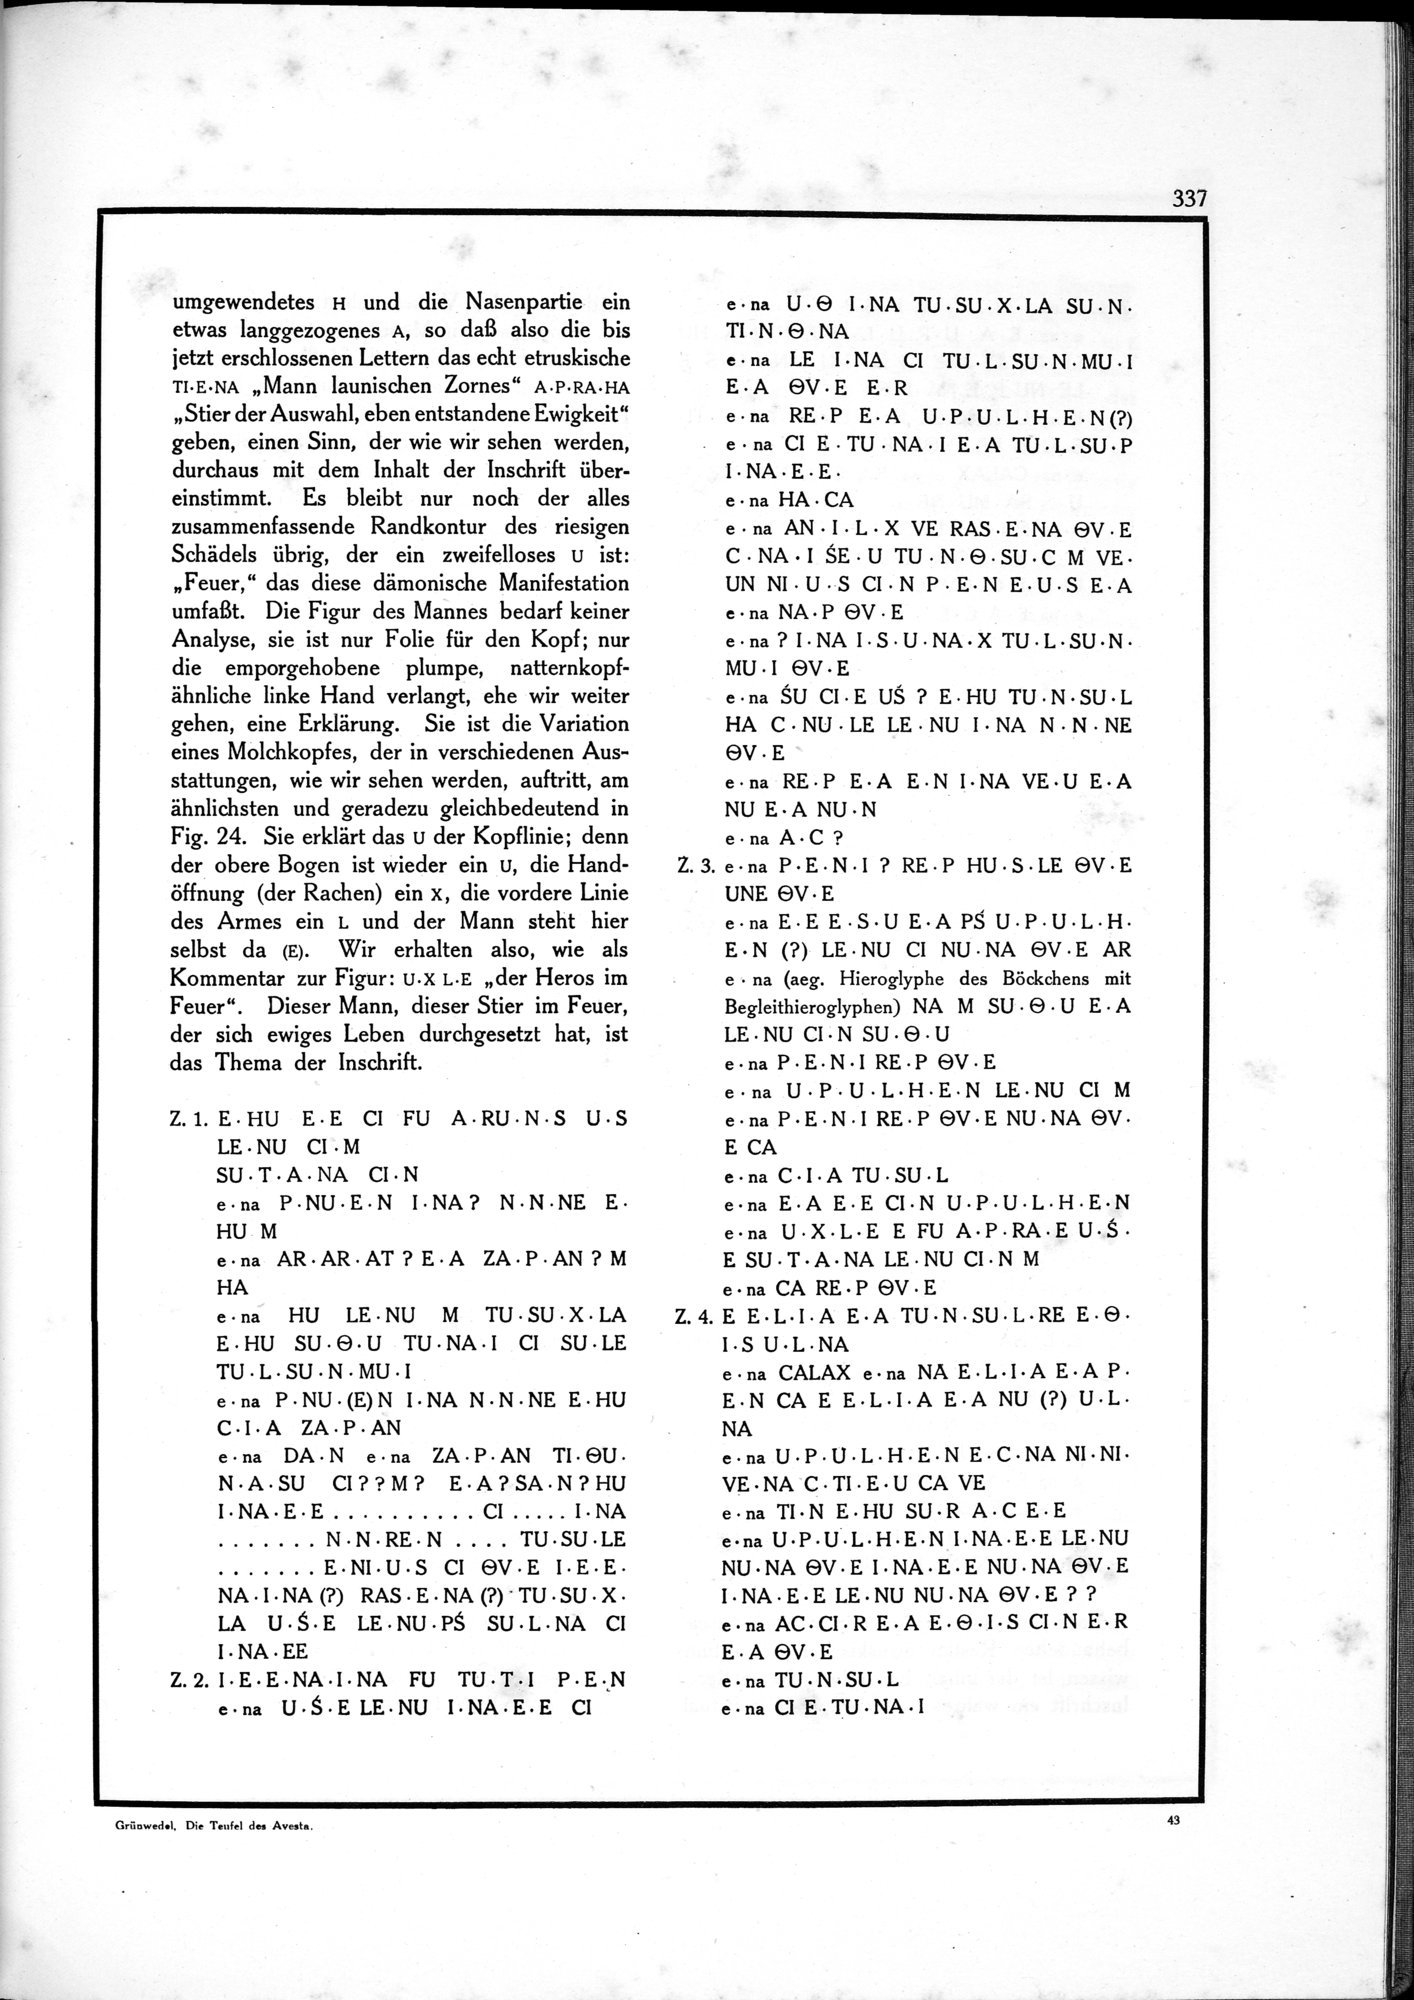 Die Teufel des Avesta und Ihre Beziehungen zur Ikonographie des Buddhismus Zentral-Asiens : vol.1 / Page 341 (Grayscale High Resolution Image)